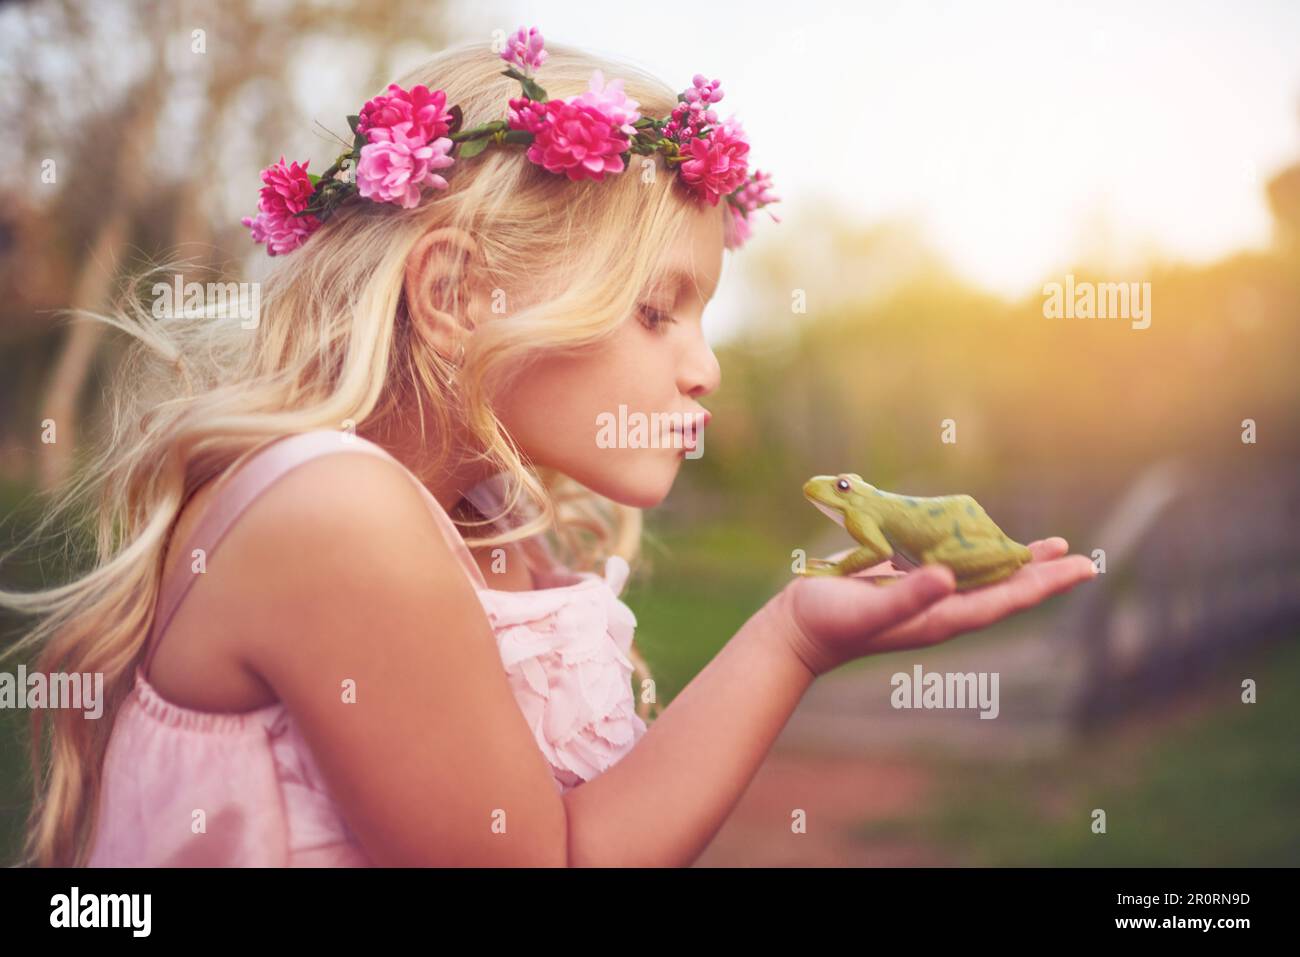 Die Schönheit und das Biest. Ein fröhliches kleines Mädchen, das einen Frosch in der Hand hält und auf einen Kuss geht, während es draußen in der Natur steht. Stockfoto